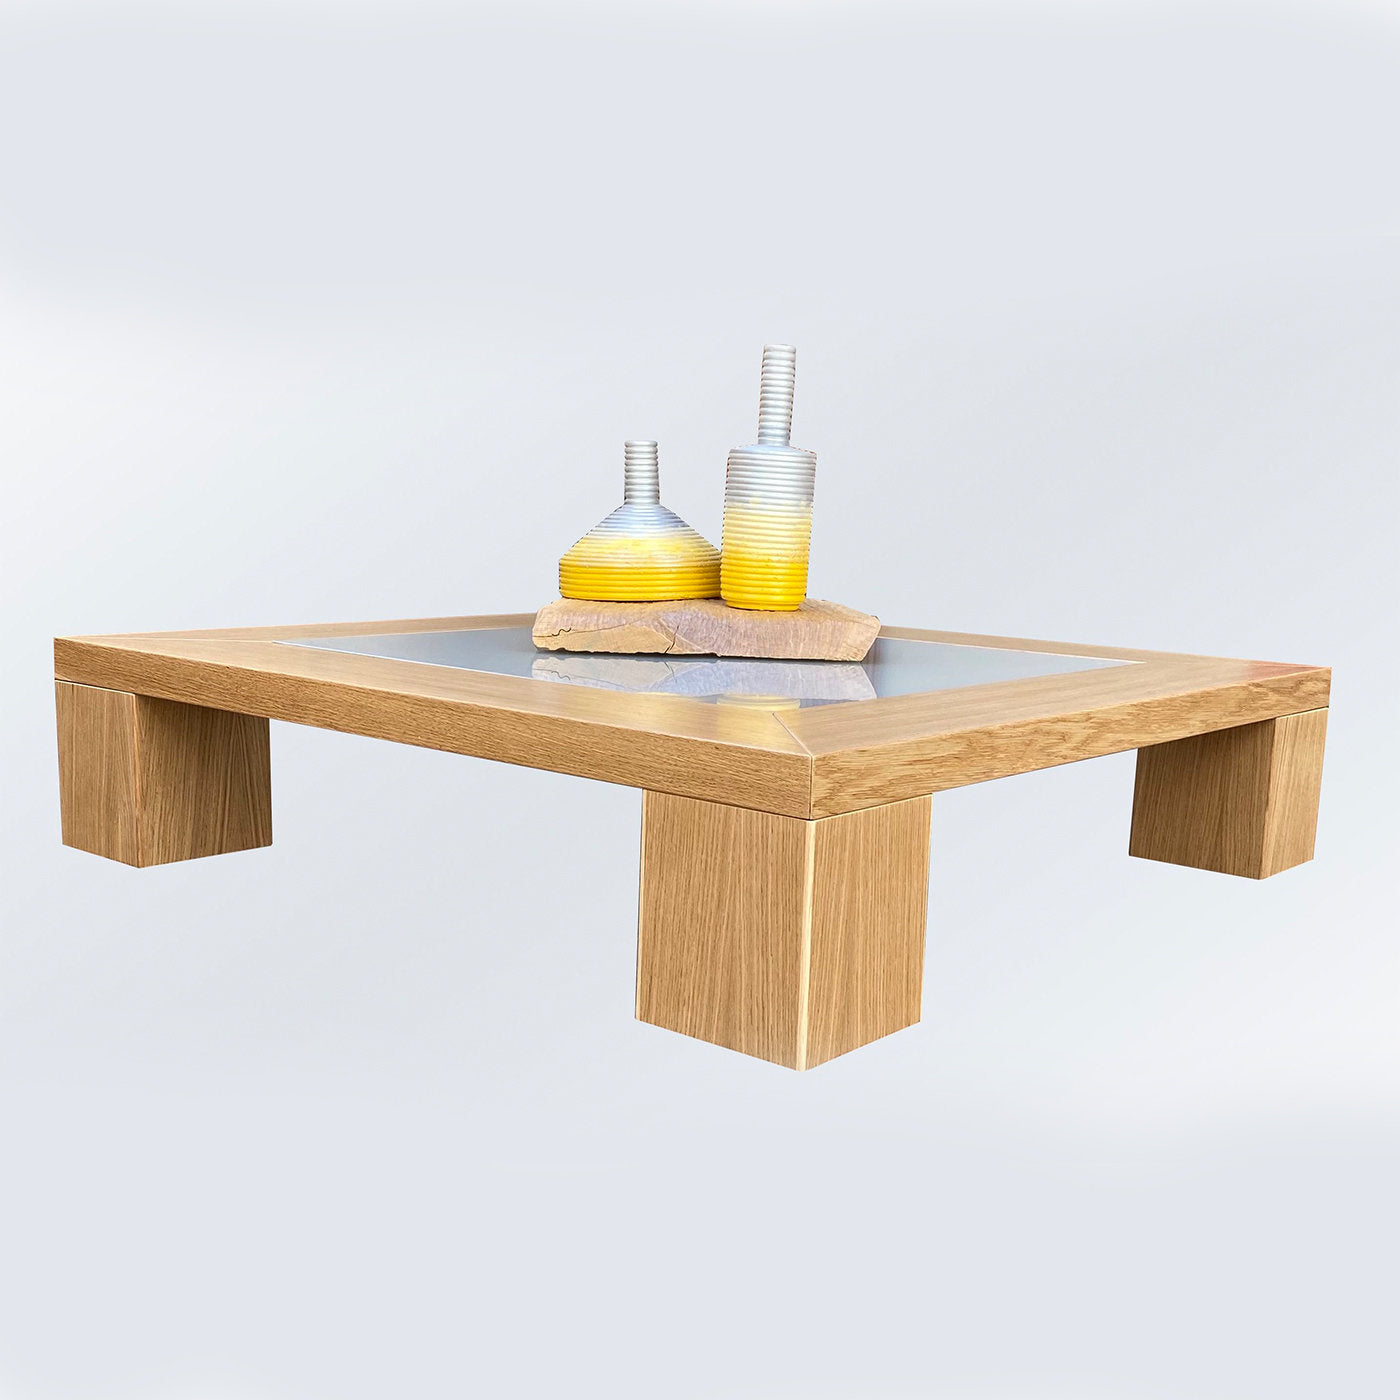 Quadro A Coffee Table by Ferdinando Meccani - Alternative view 3